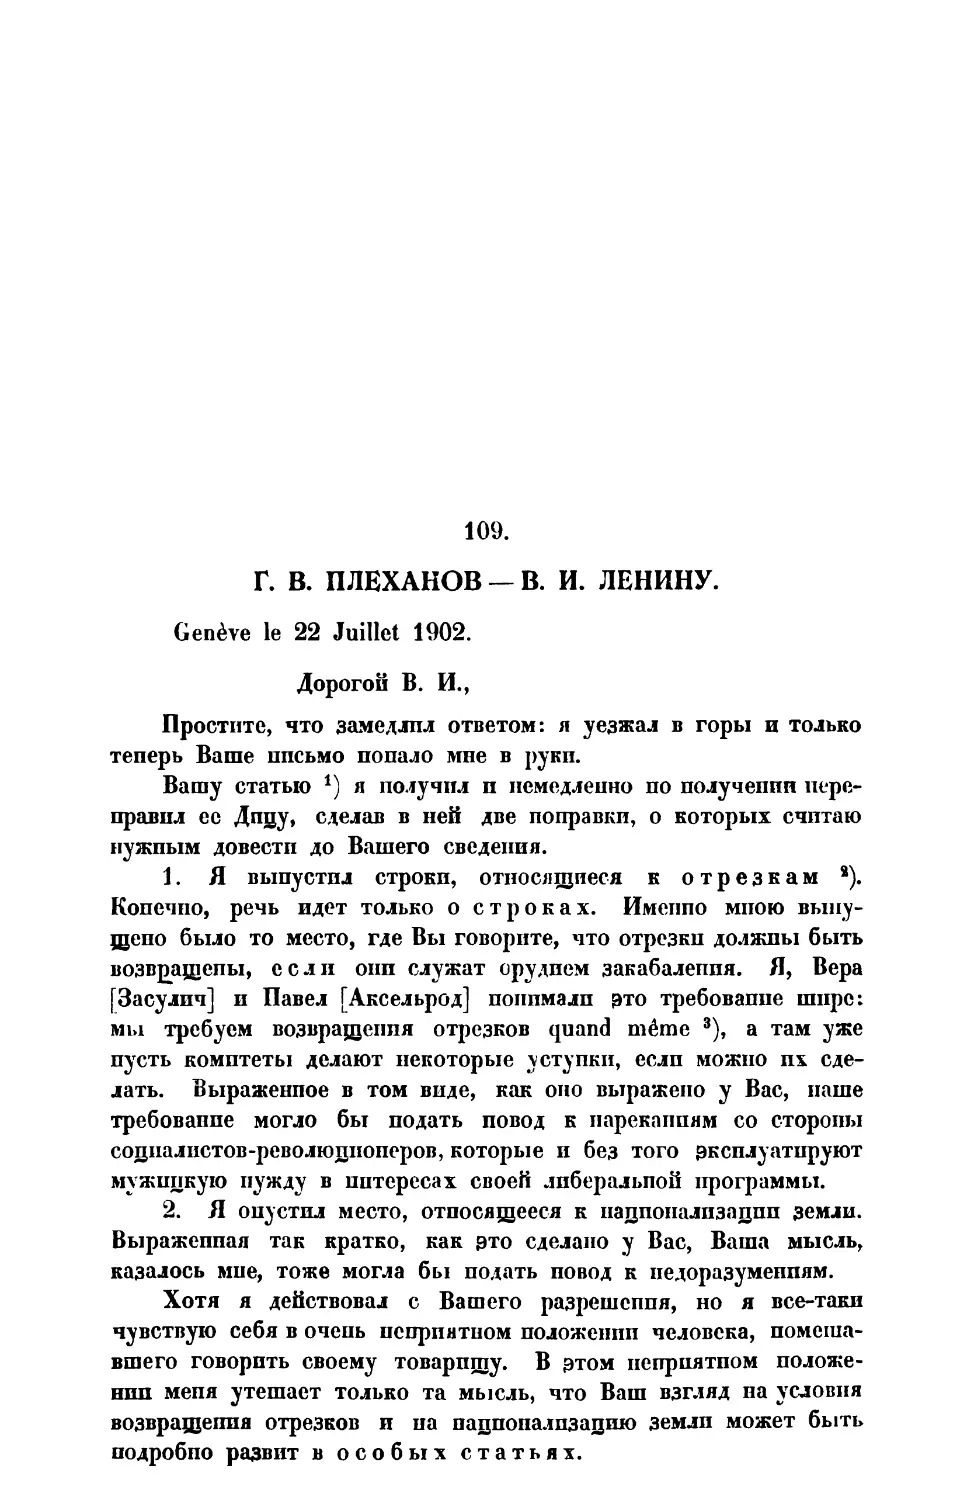 109. Г. В. Плеханов. —Письмо В. II. Ленину от 22 VII 1902 г.